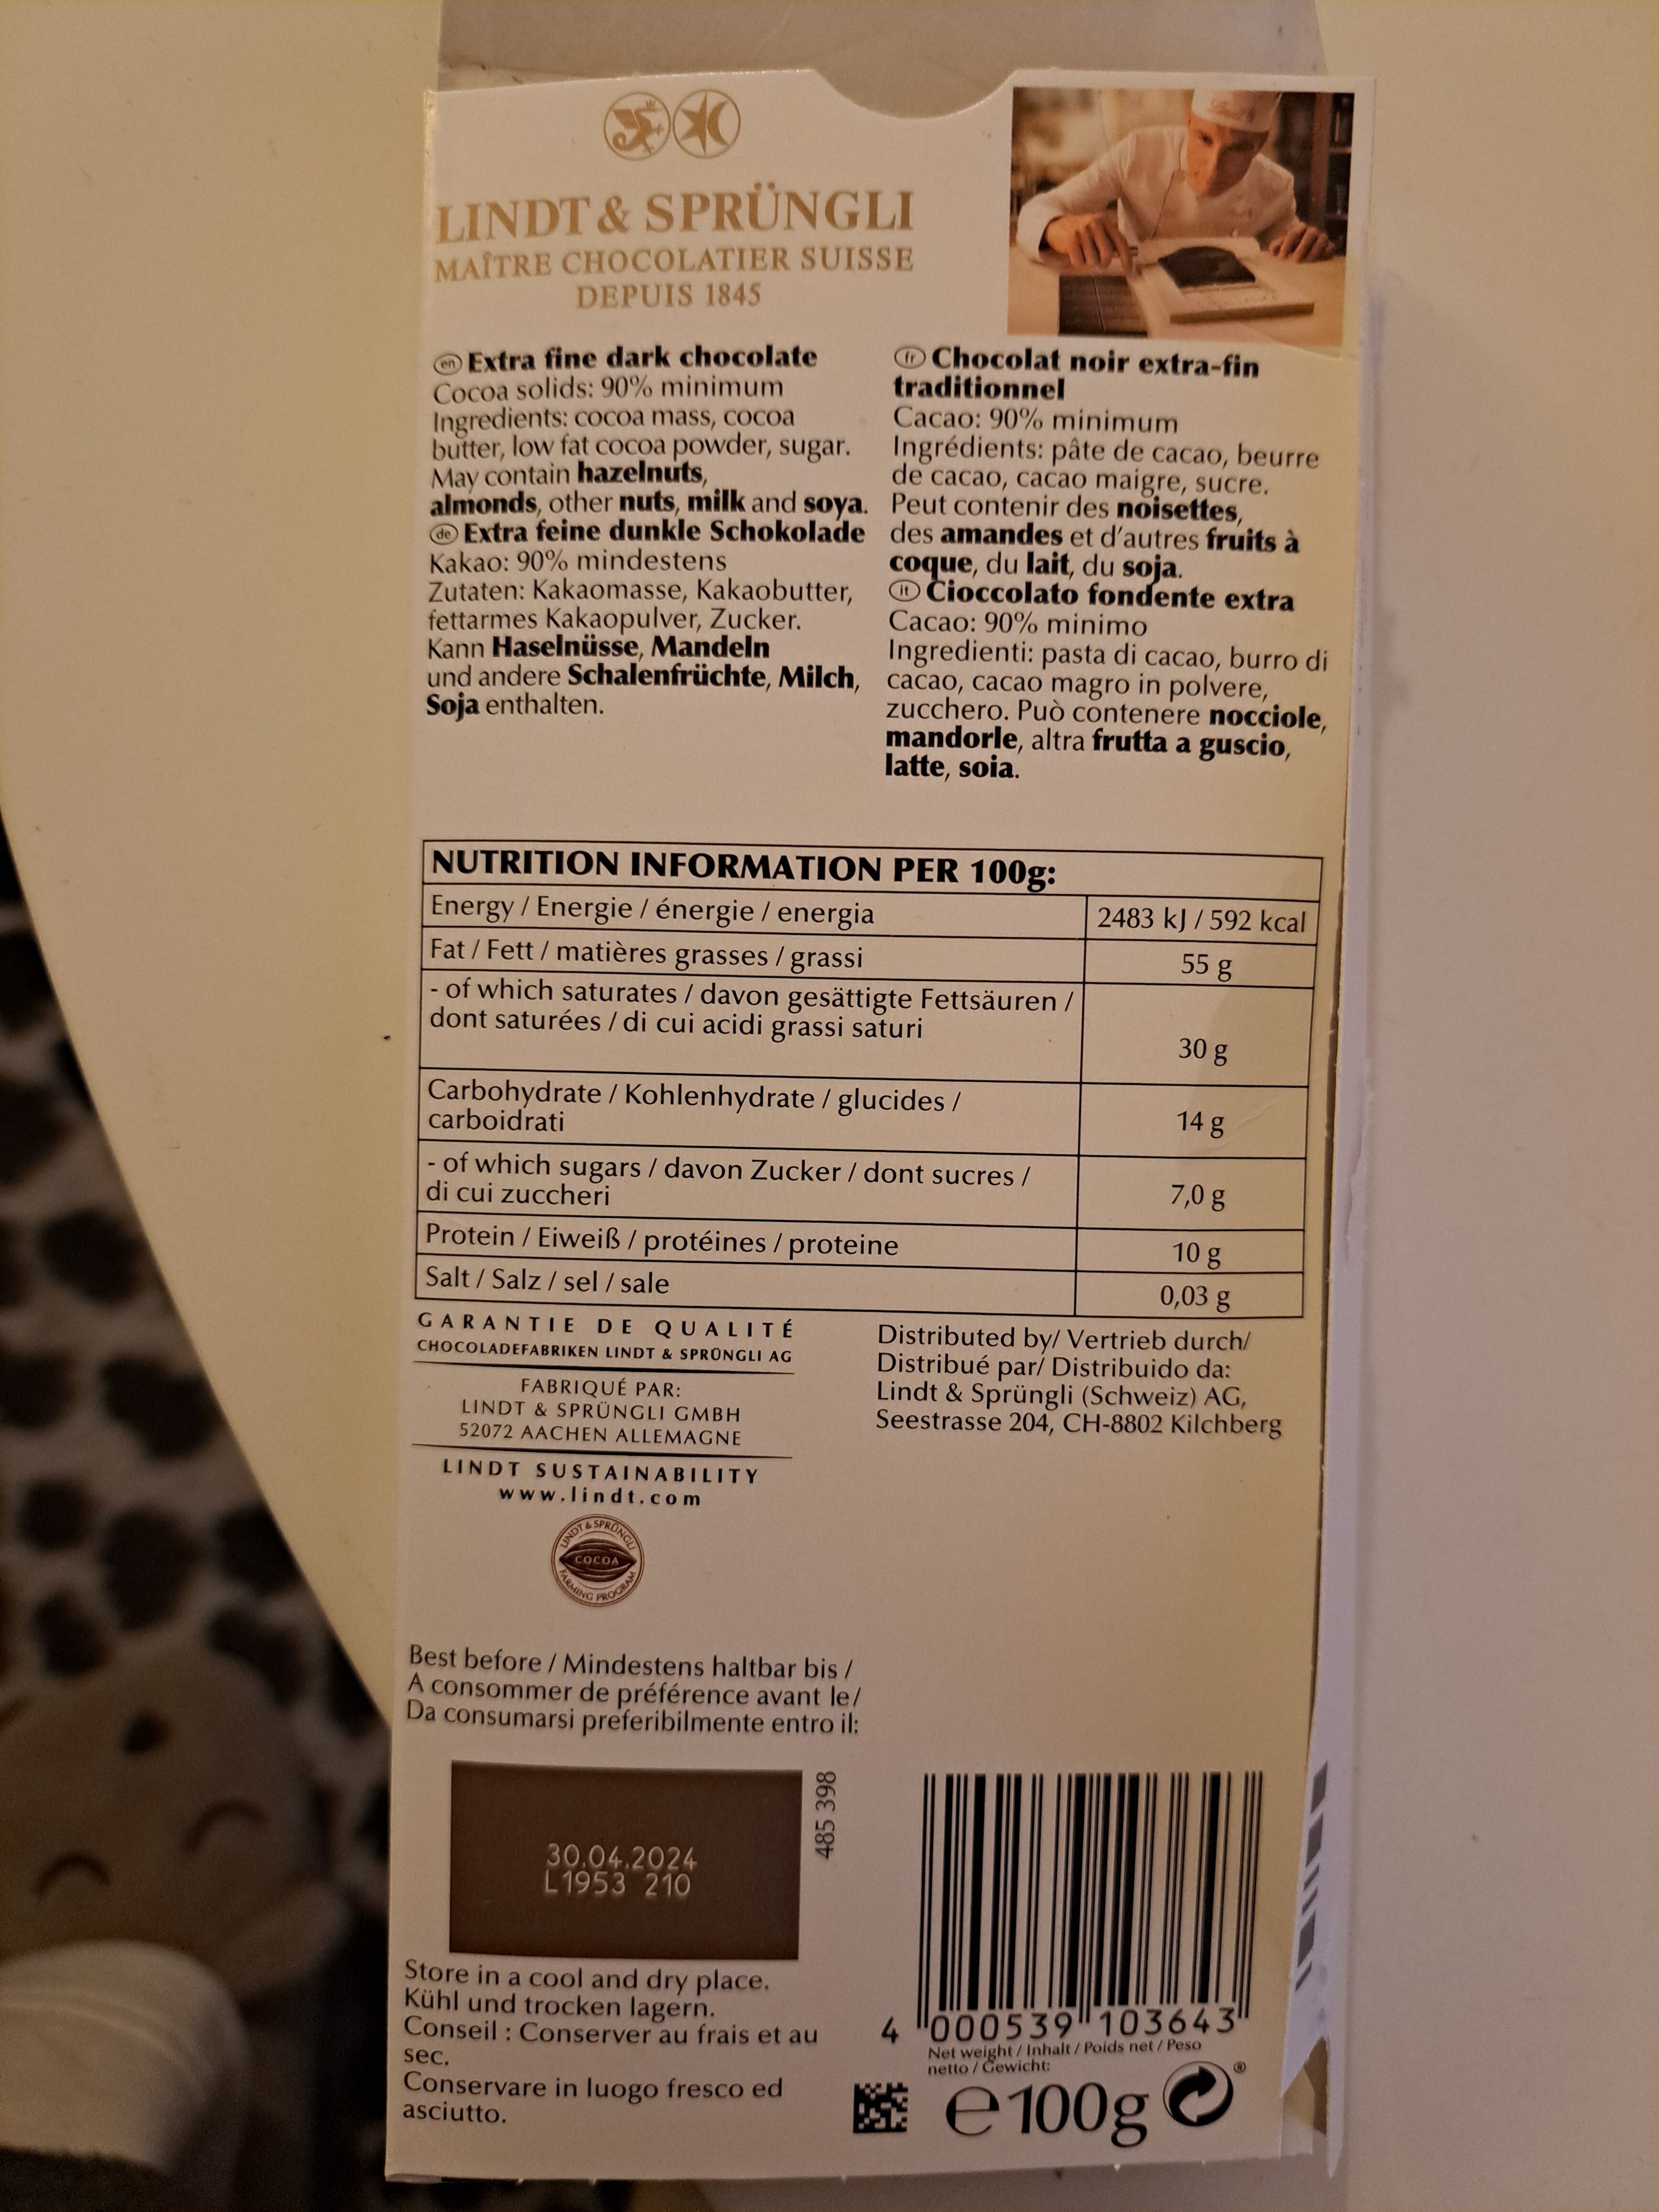 Noir Prodigieux 90% - Istruzioni per il riciclaggio e/o informazioni sull'imballaggio - fr